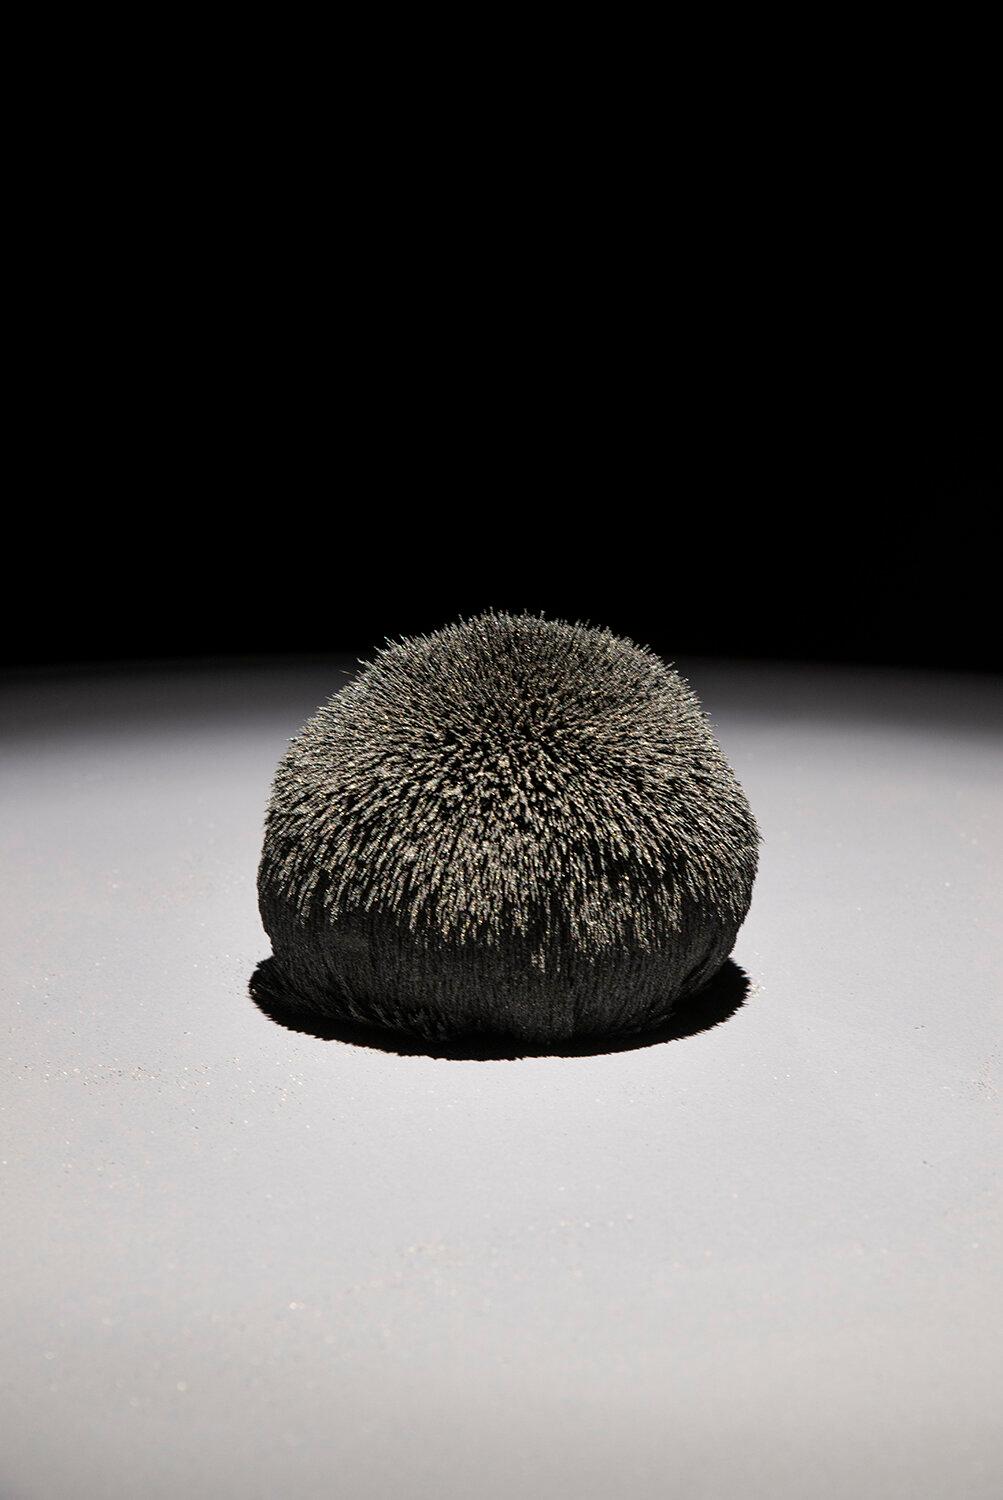 "Kraftfeld-Sphäre" von John Ruppert
Vulkansand (Magnetit) aus dem Joshua Tree, Seltenerdmagnet

In den letzten 35 Jahren hat John Ruppert mit gegossenen Metallen, hergestellten Materialien wie Maschendrahtgewebe, gemischten Medien und in jüngerer